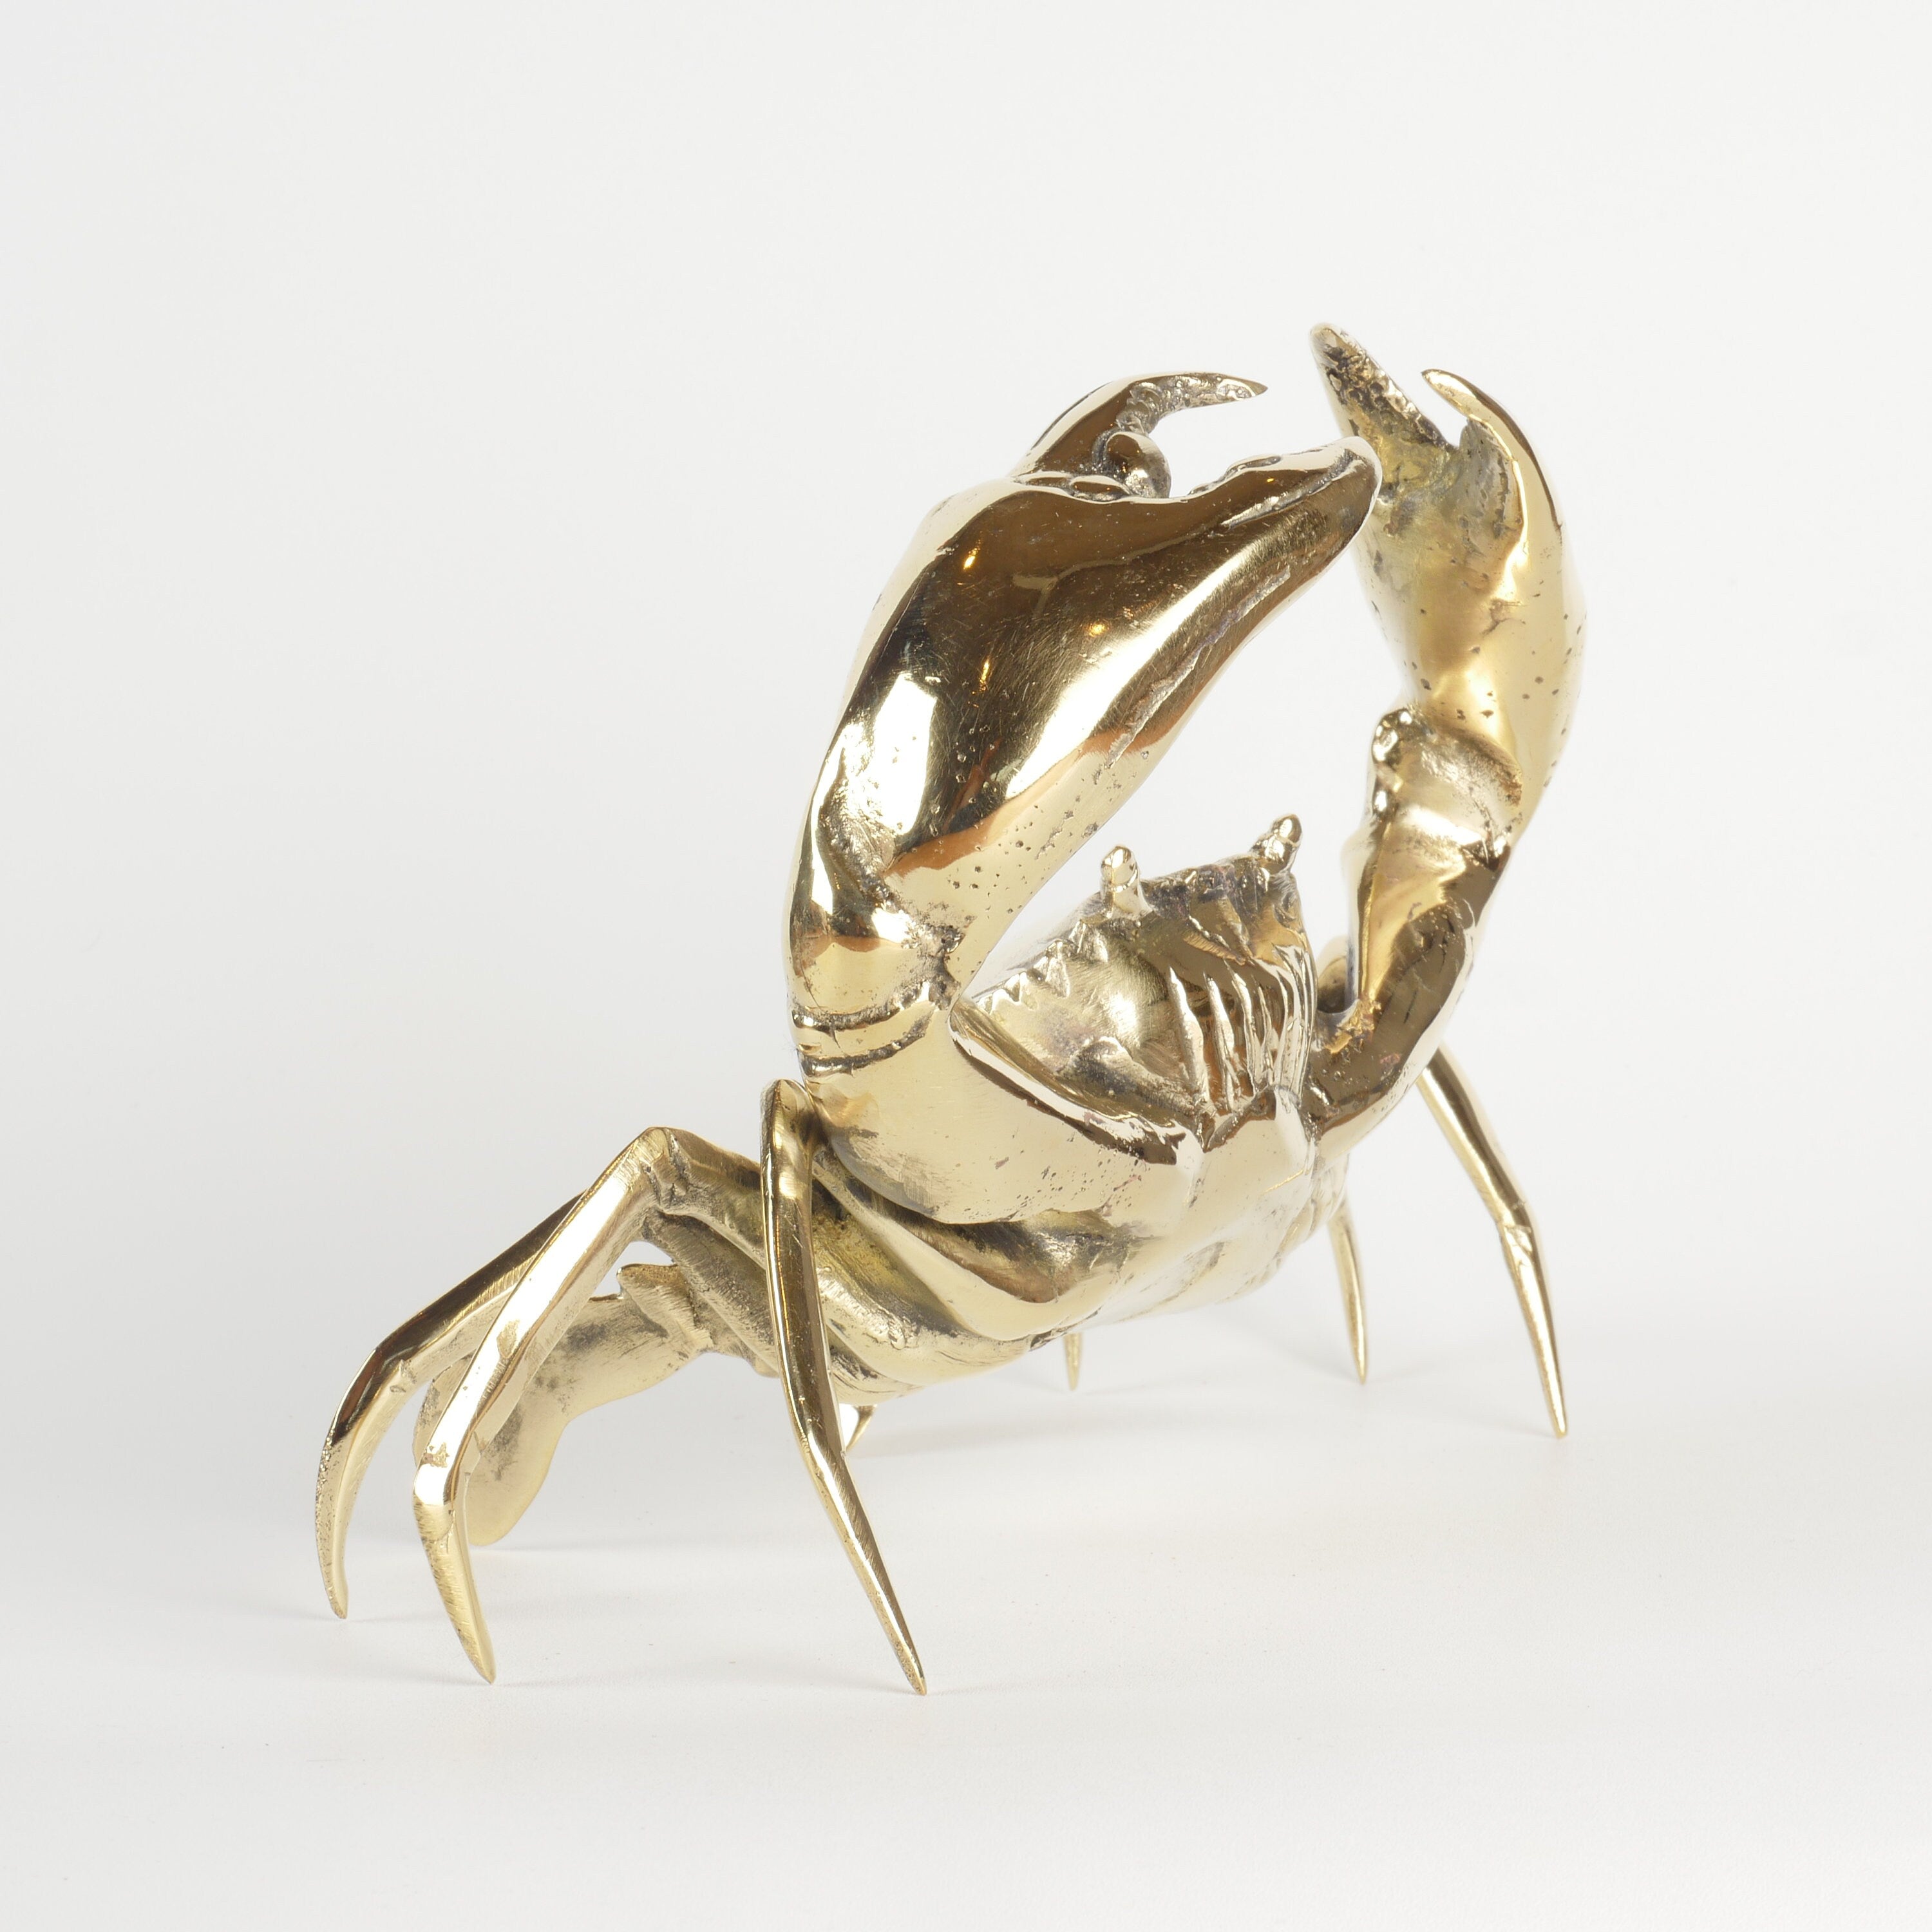 Mr Pinchy Crab - Brass Crab - Brass Crab Figure - Brass Crab Statue - Brass Crab Deco - Boho Crab -